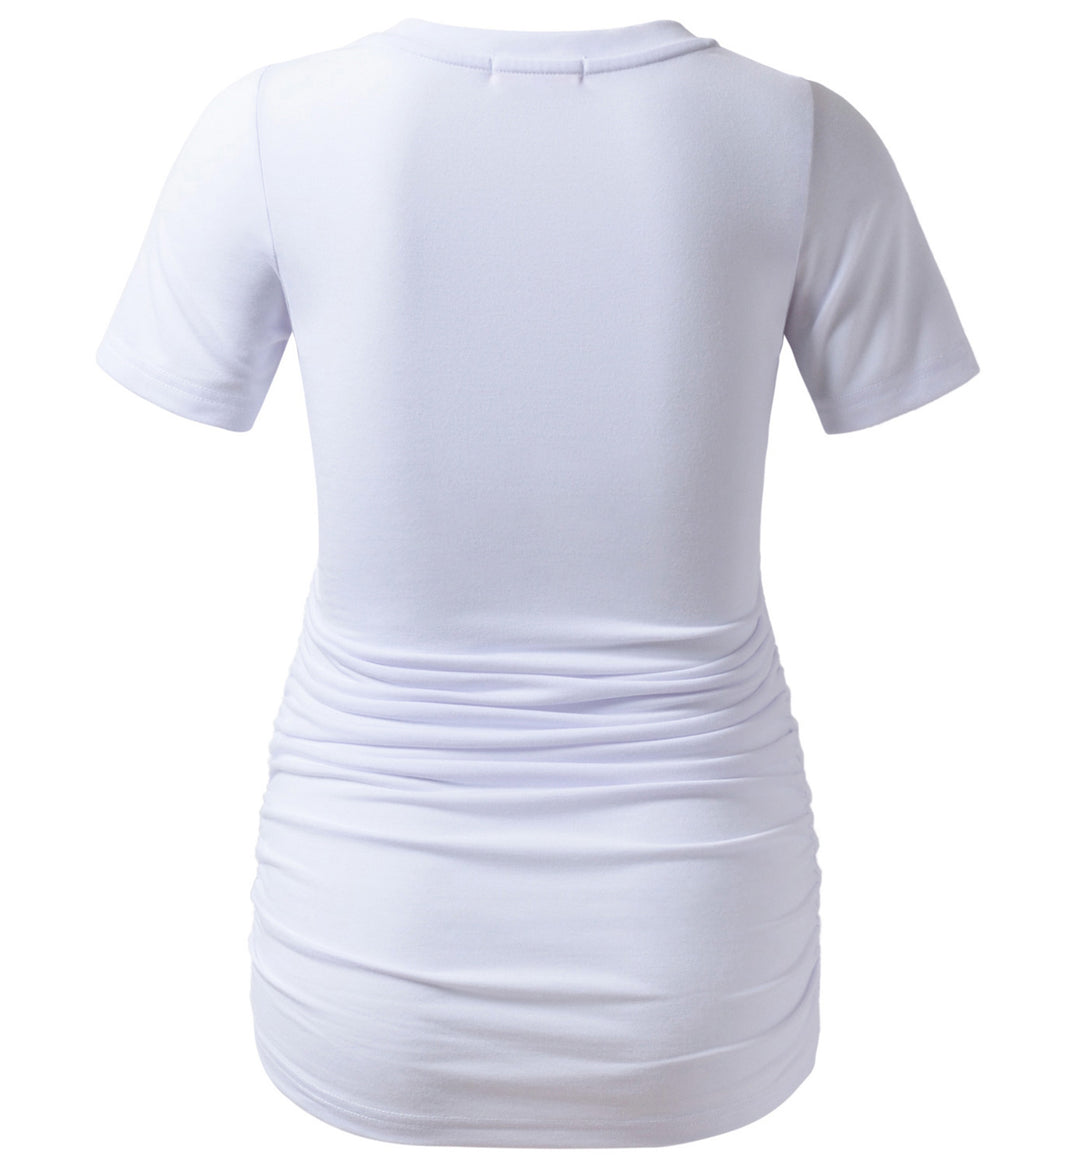 Unique Pattern Short Sleeve V Neck Pregnancy Top in Side Ruched Design